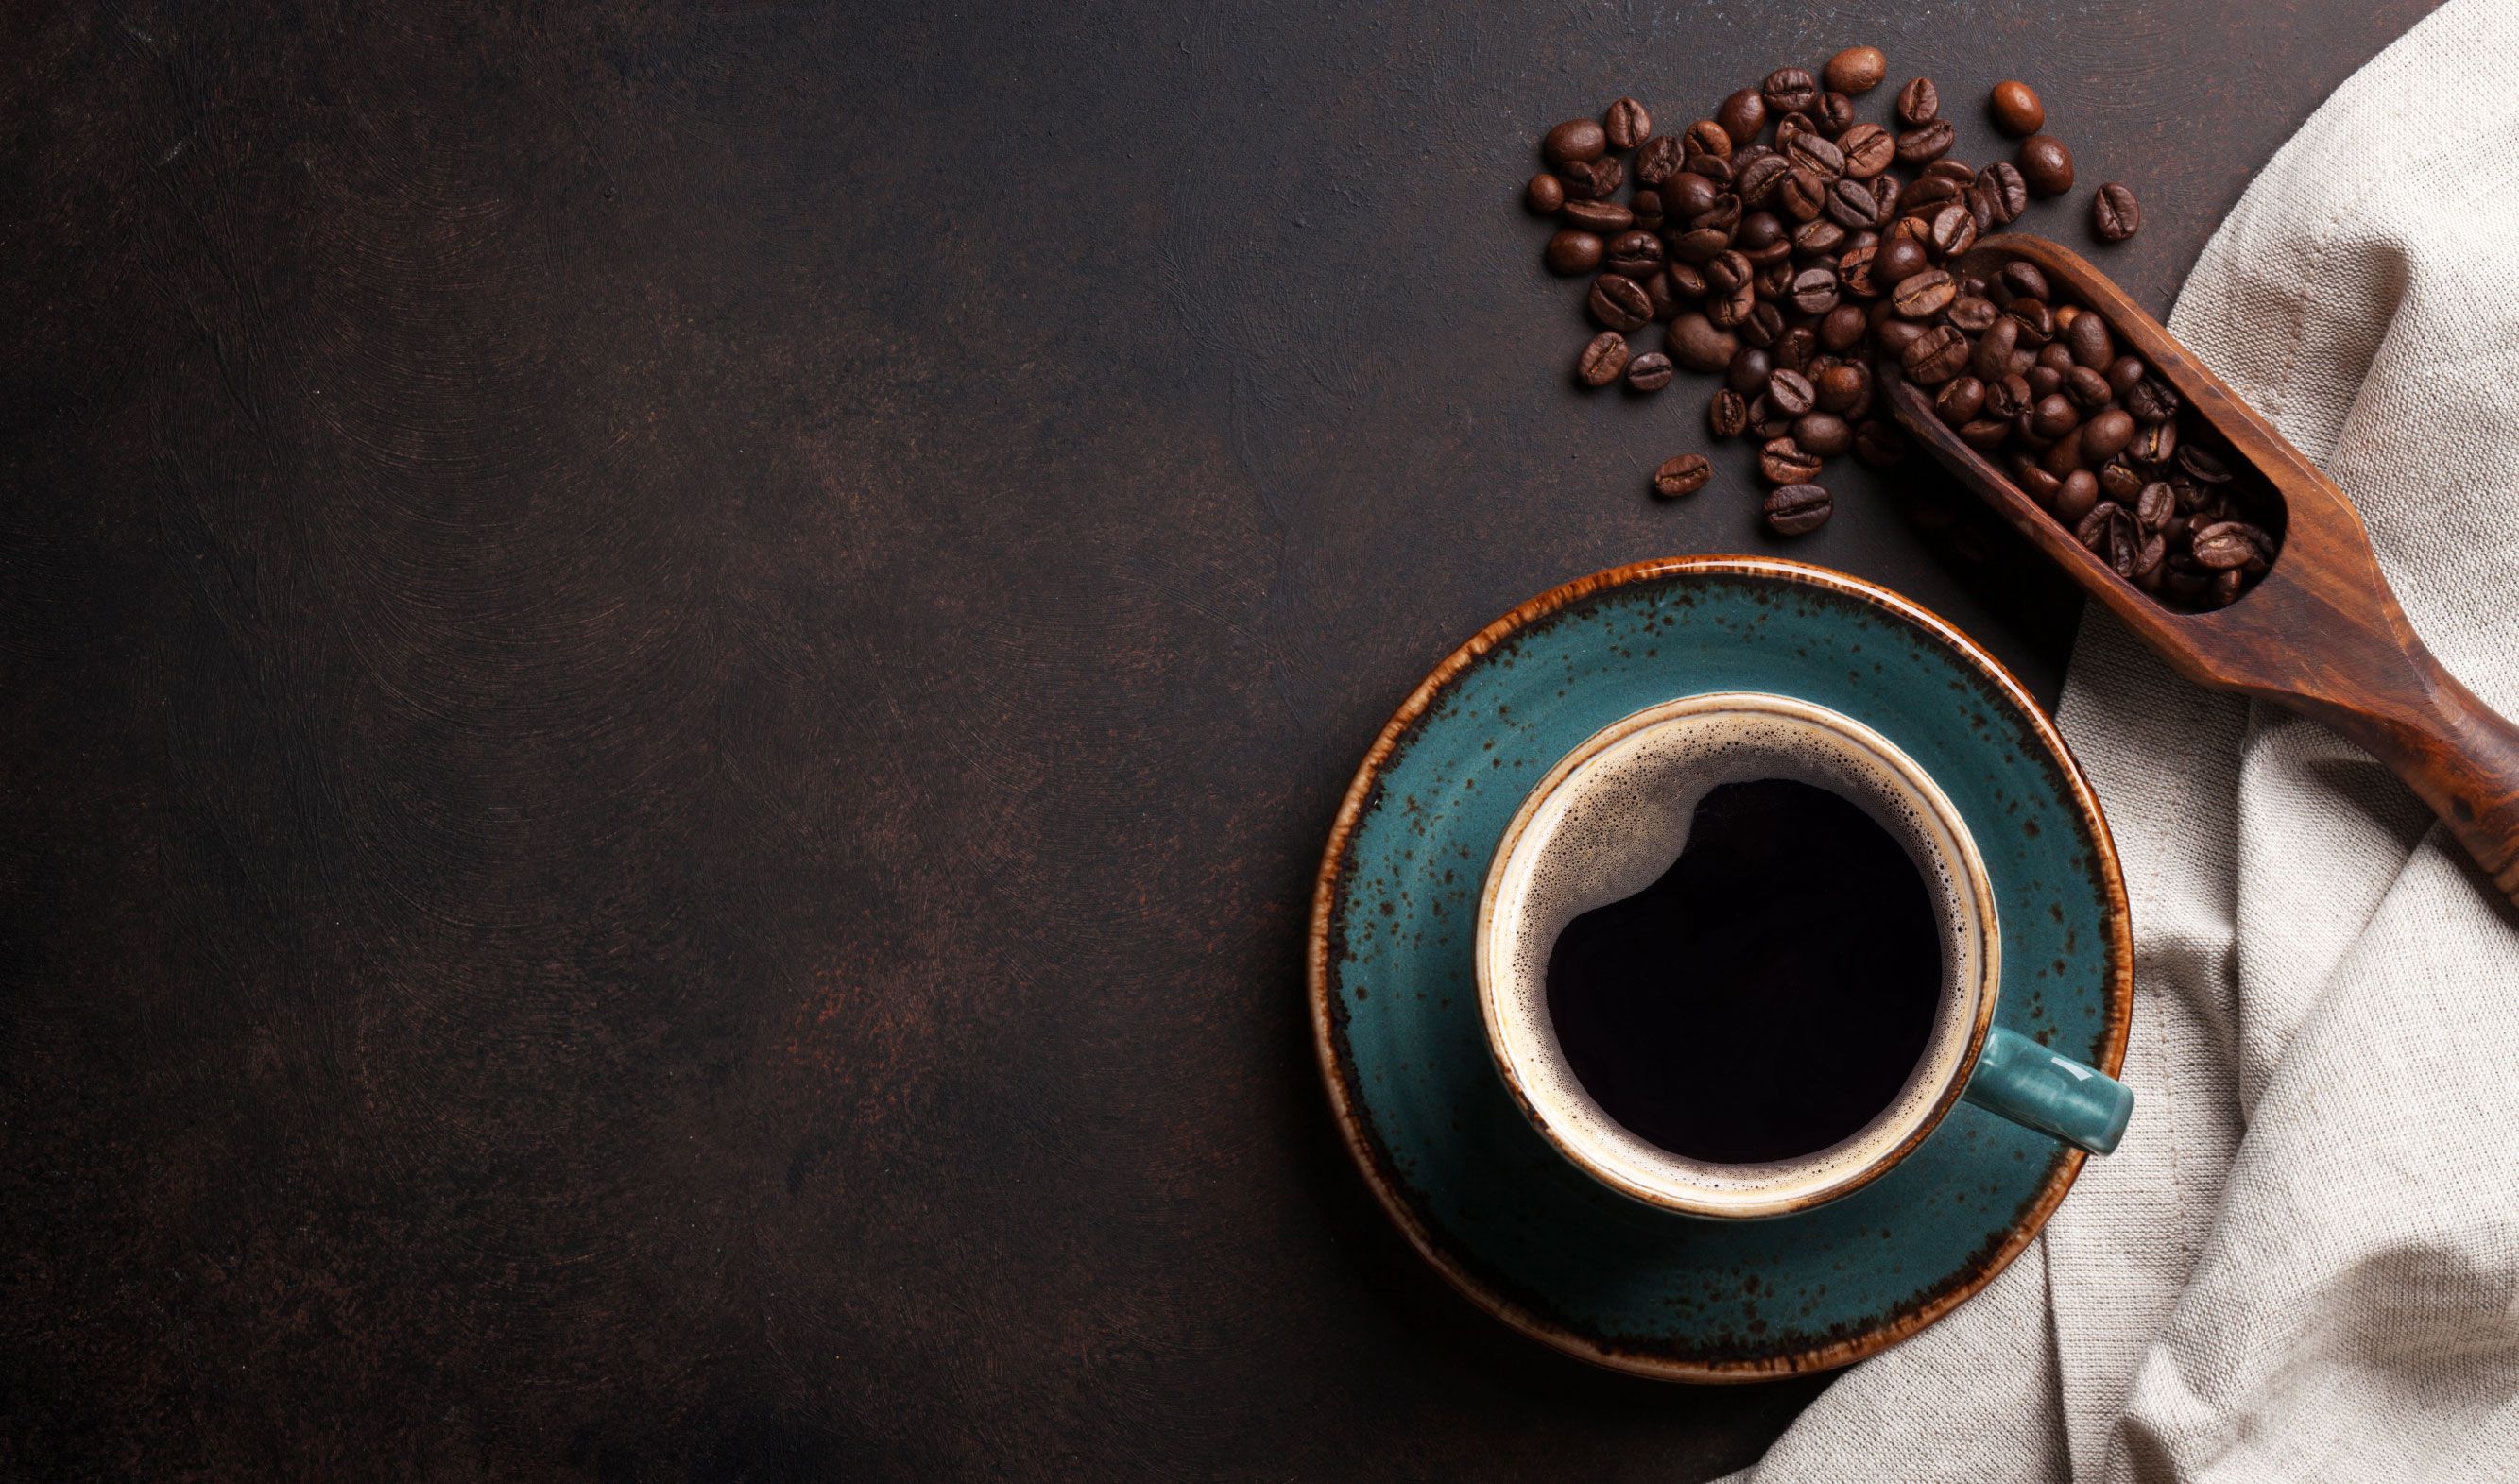 10 фактов о пользе кофе, доказанных наукой